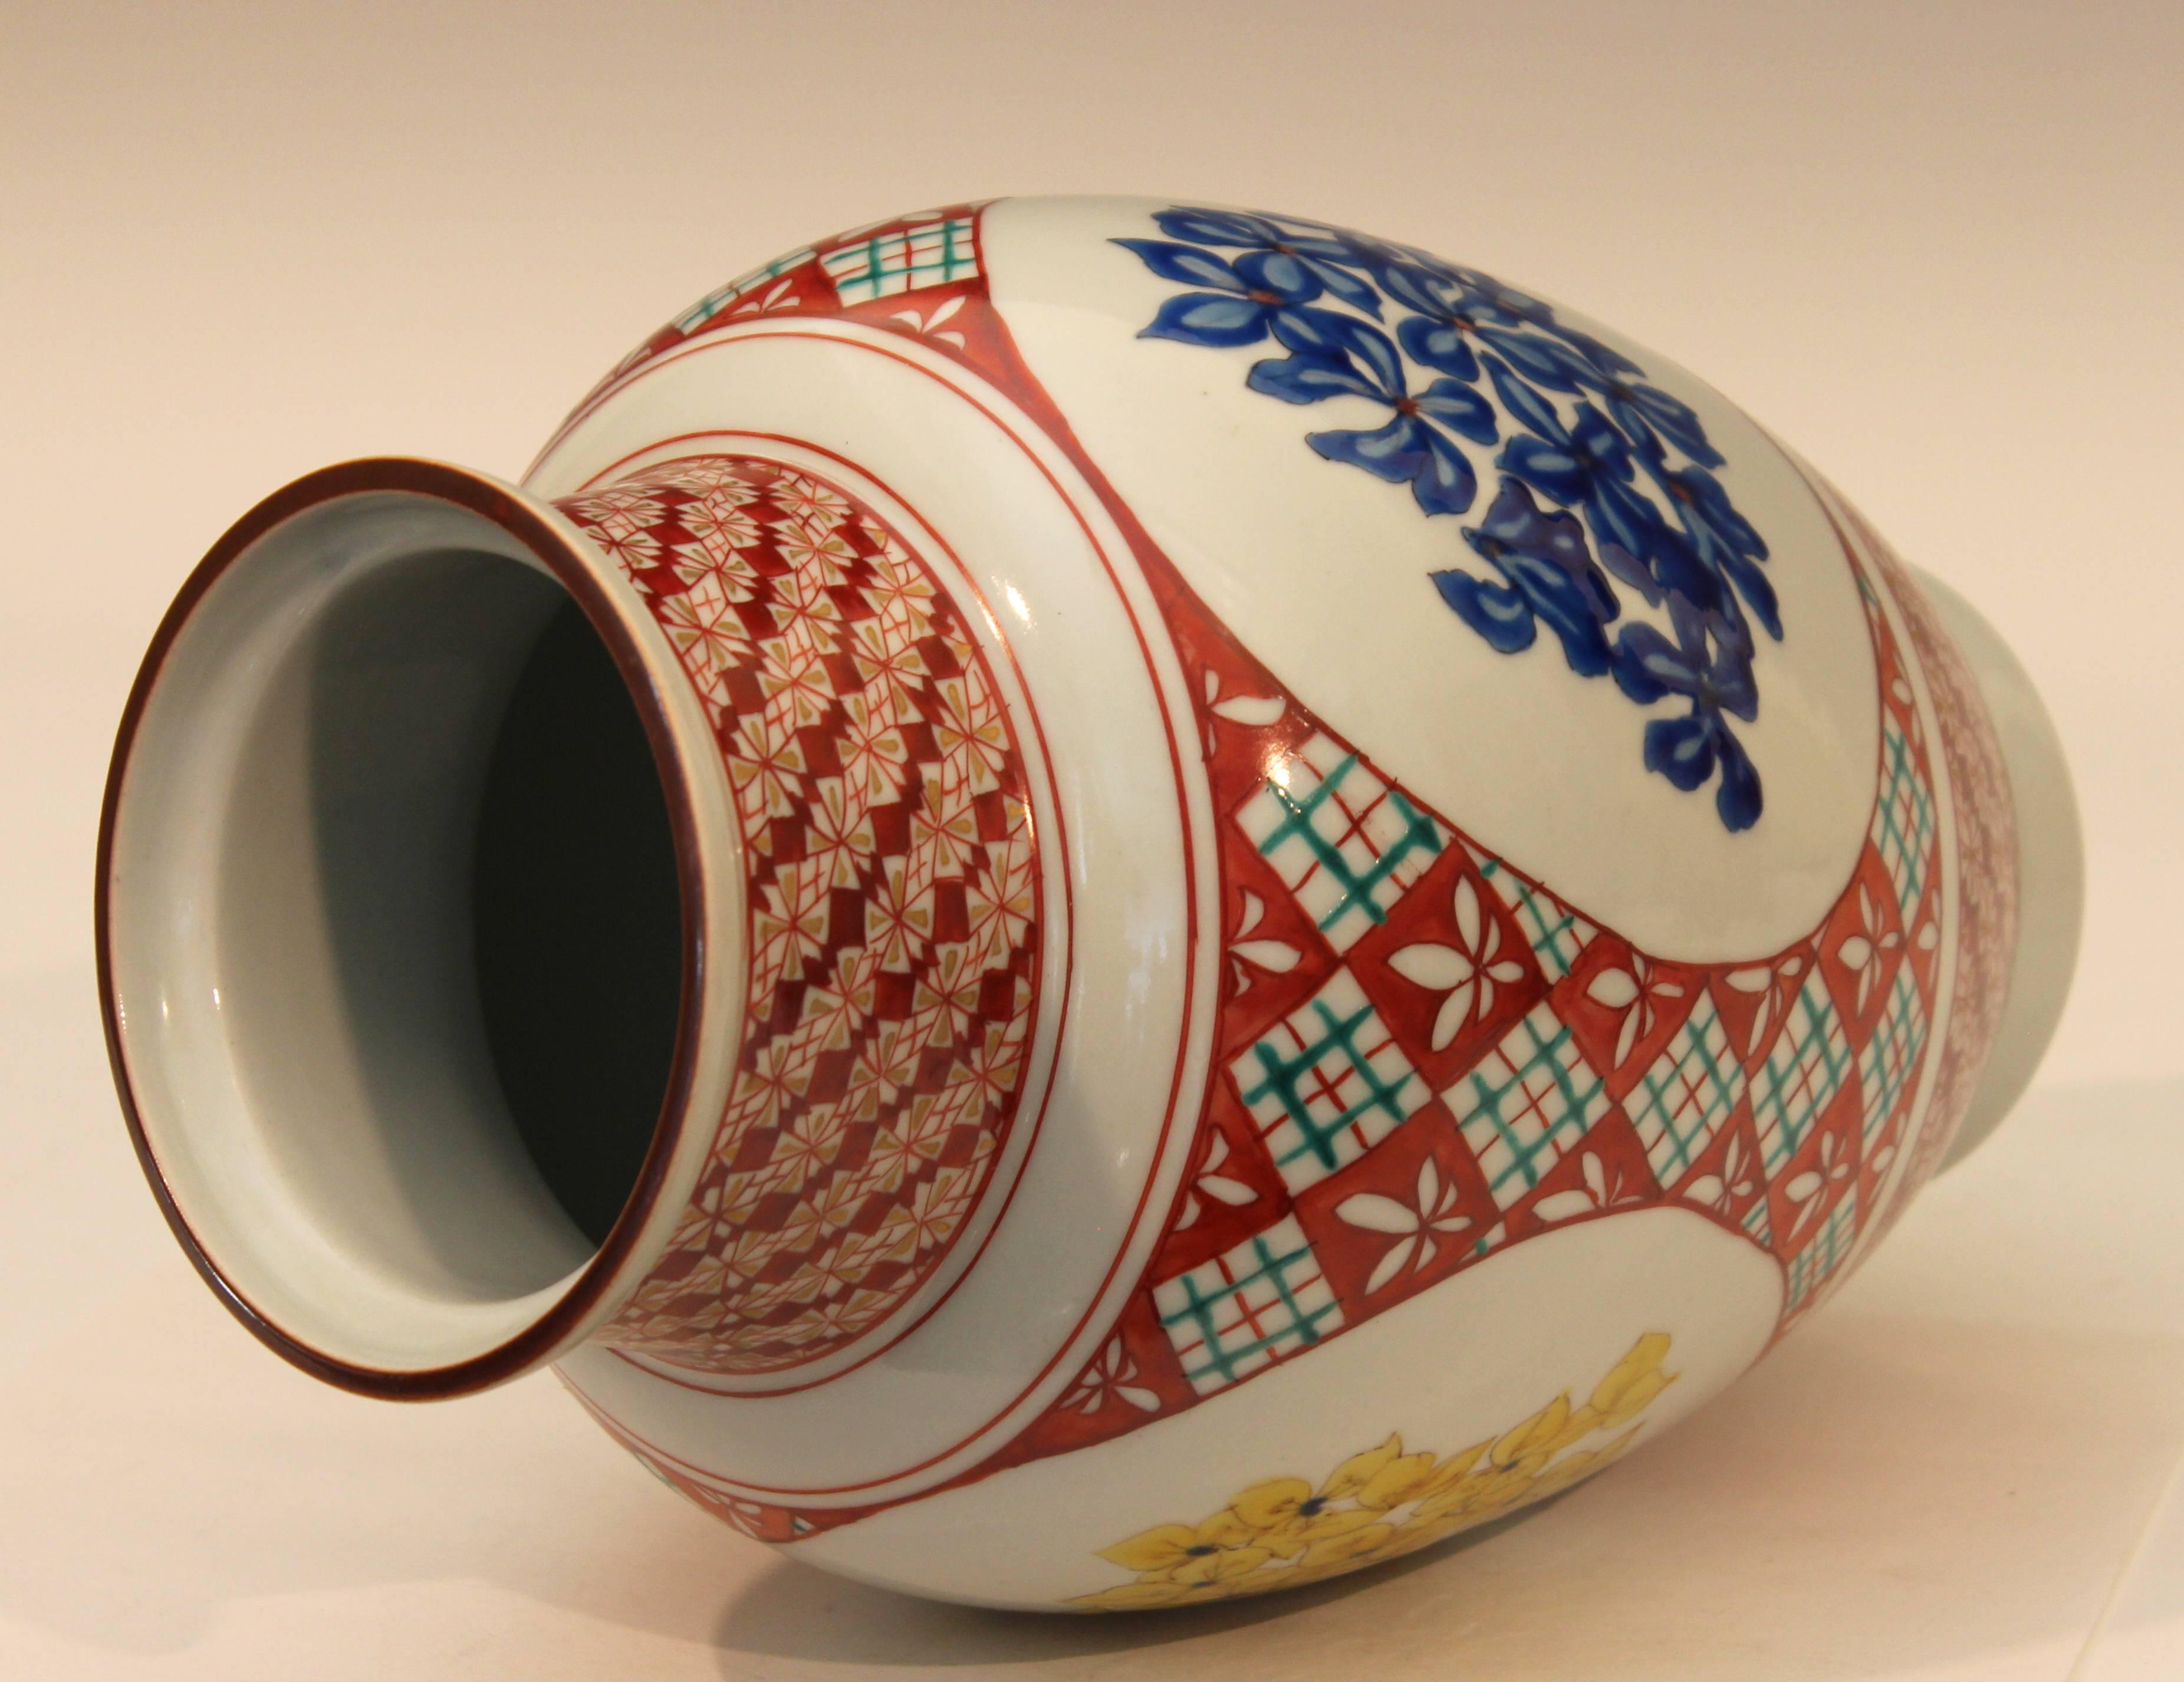 Turned Kutani Studio Porcelain Vintage Contemporary Japanese Enameled Flowers Signed